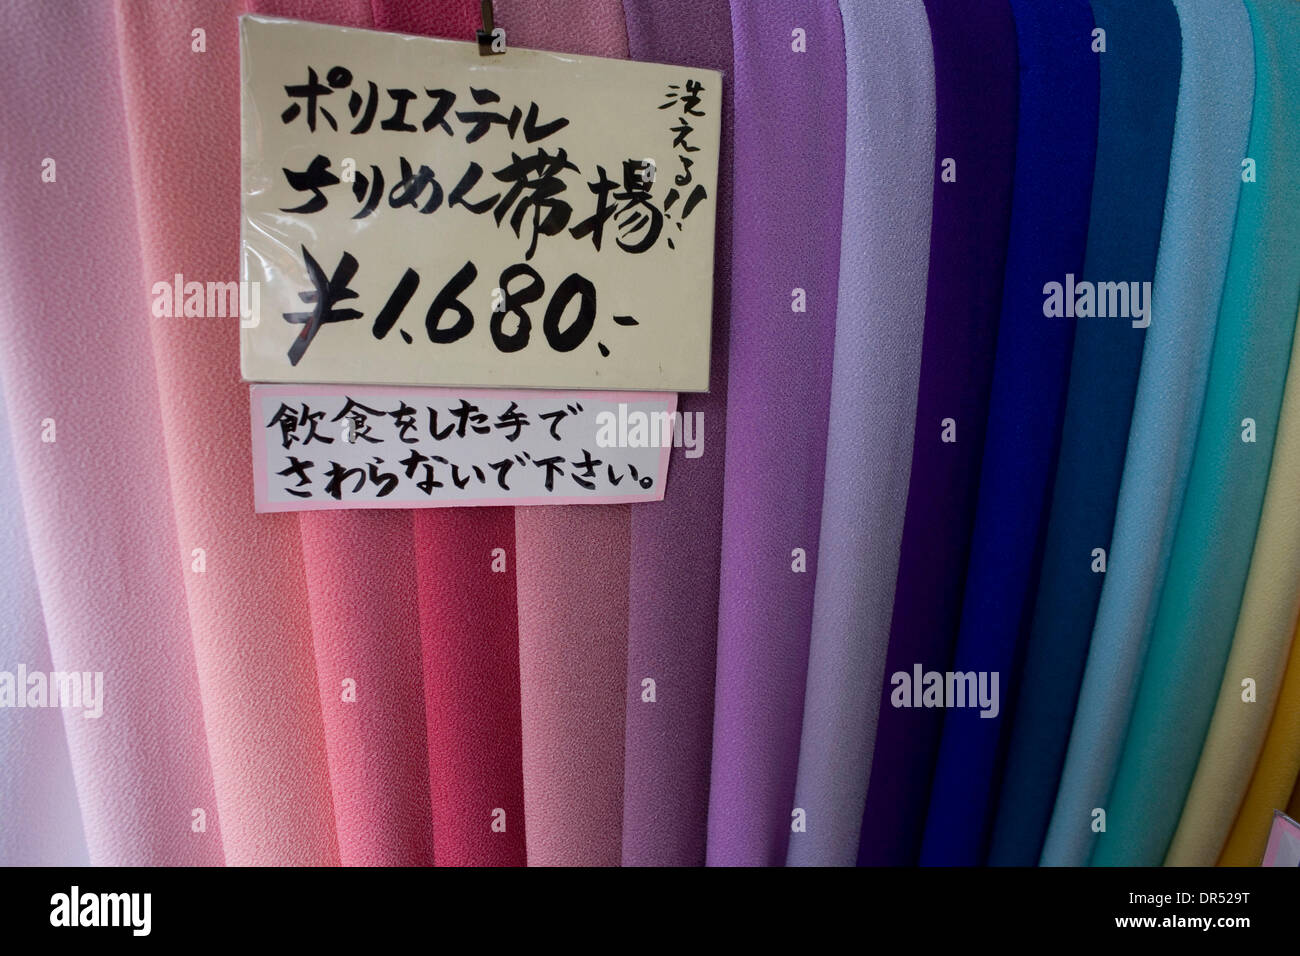 Dec 15, 2008 - Tokio, Japón - Tonos de telas son vendidos. Kimonos tradicionales japoneses son el código de vestimenta. Sin embargo, son generalmente usados por mujeres mayores. Los adultos más jóvenes prefieren el moderno estilo de moda. Foto de stock